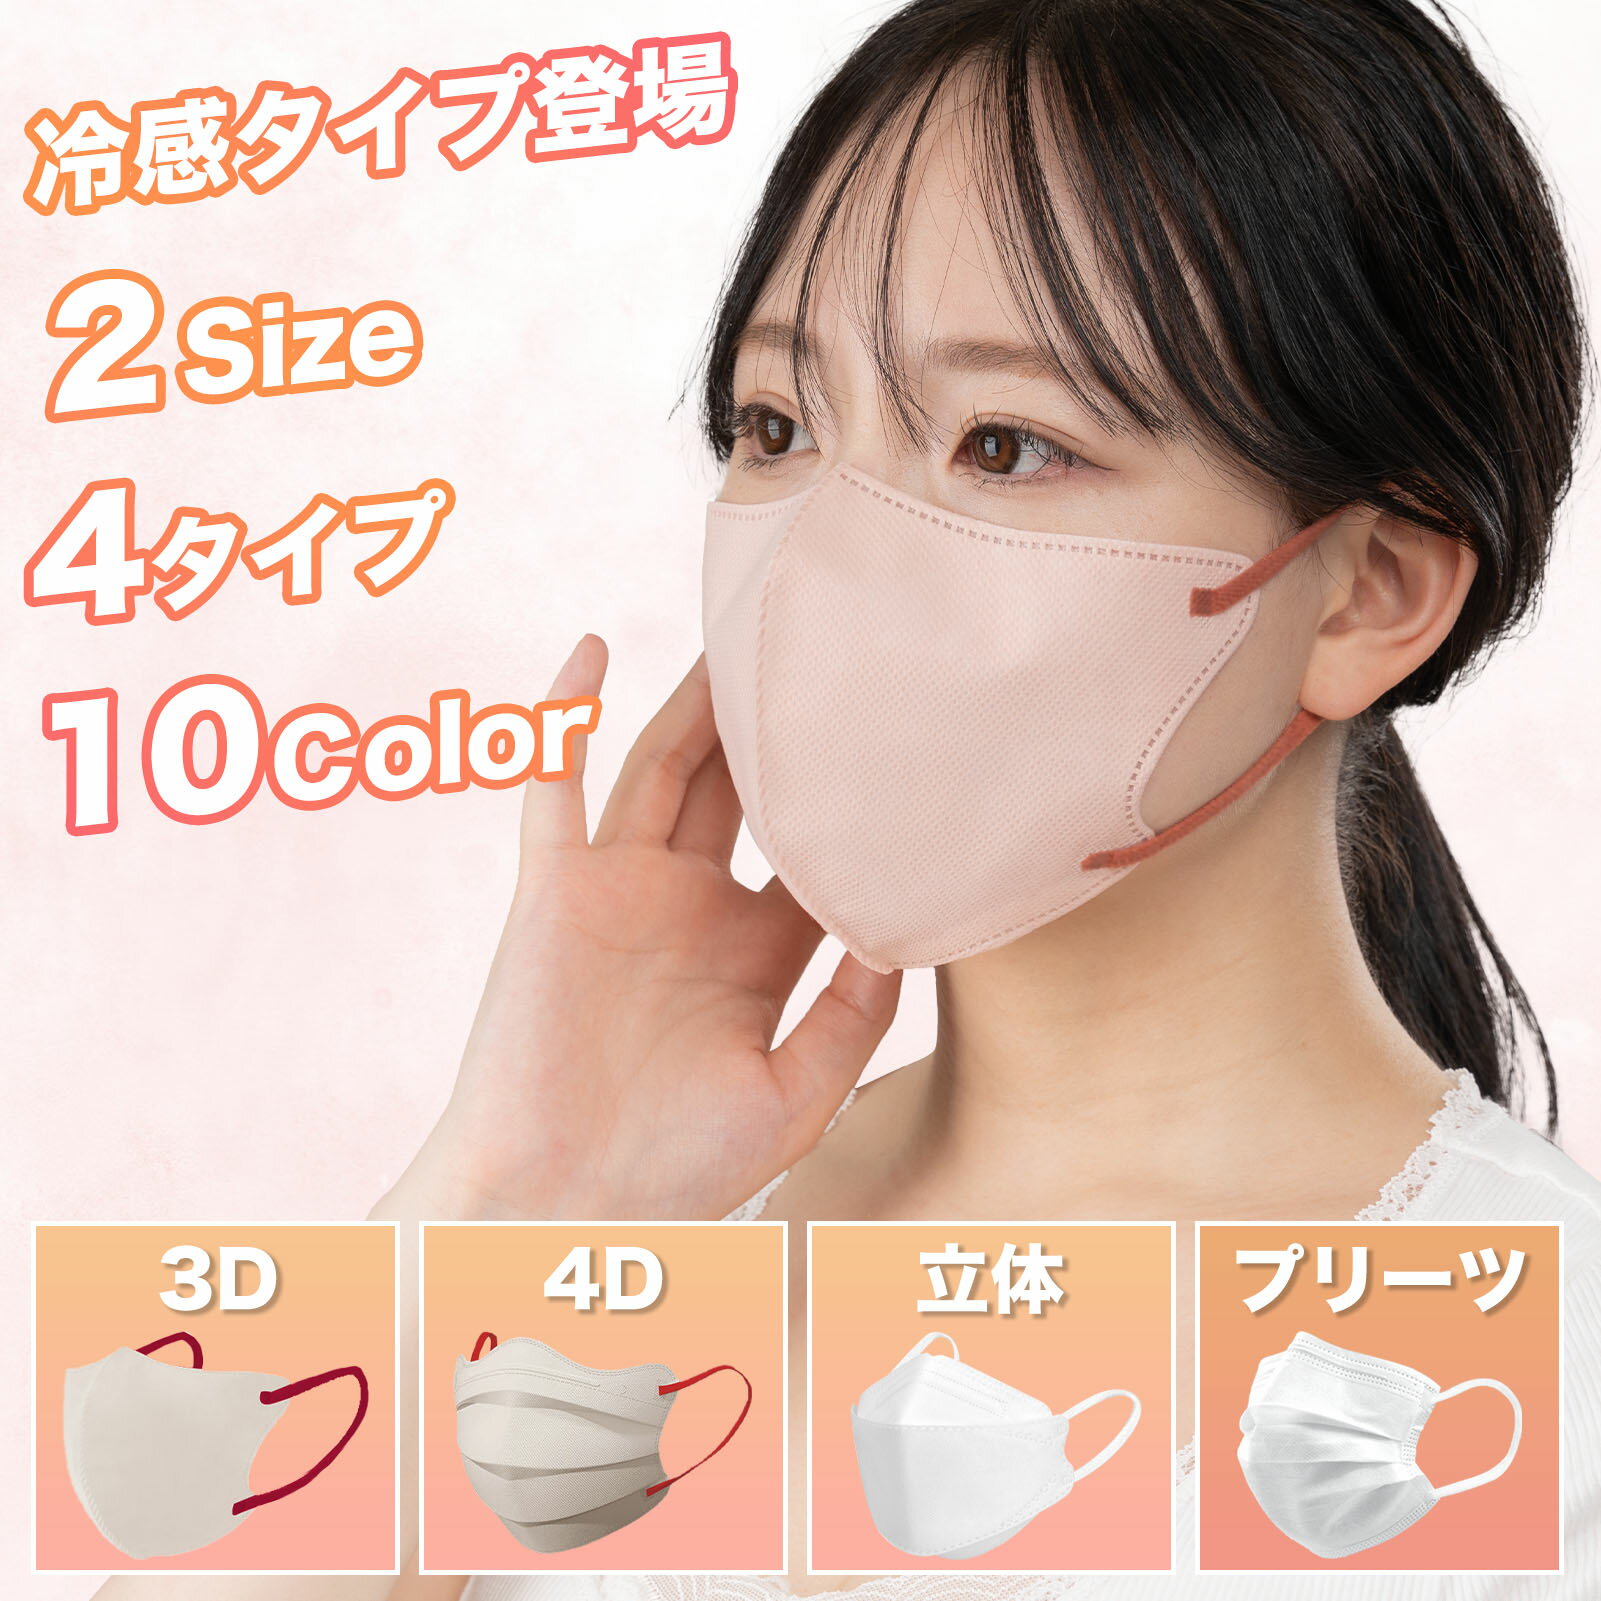 マスク 不織布 3Dマスク 日本製 冷感マスク 4Dマスク 立体マスク 大人 子供 カラー くちばし 30枚 50枚 60枚 小顔 使い捨て メガネが曇りにくい 呼吸しやすい 口紅に付かない 耳が痛くならない